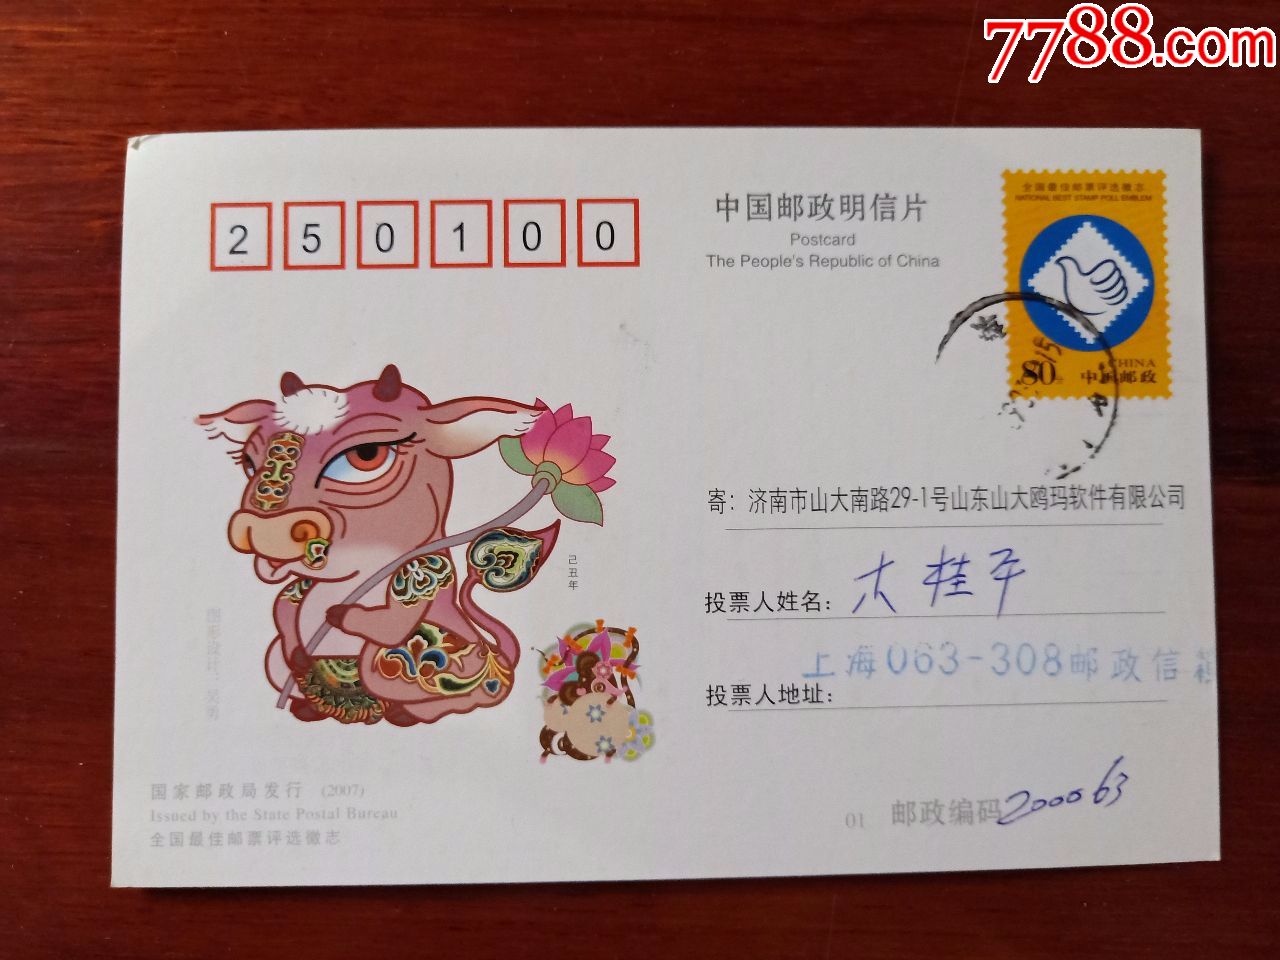 盖戳中国邮政明信片